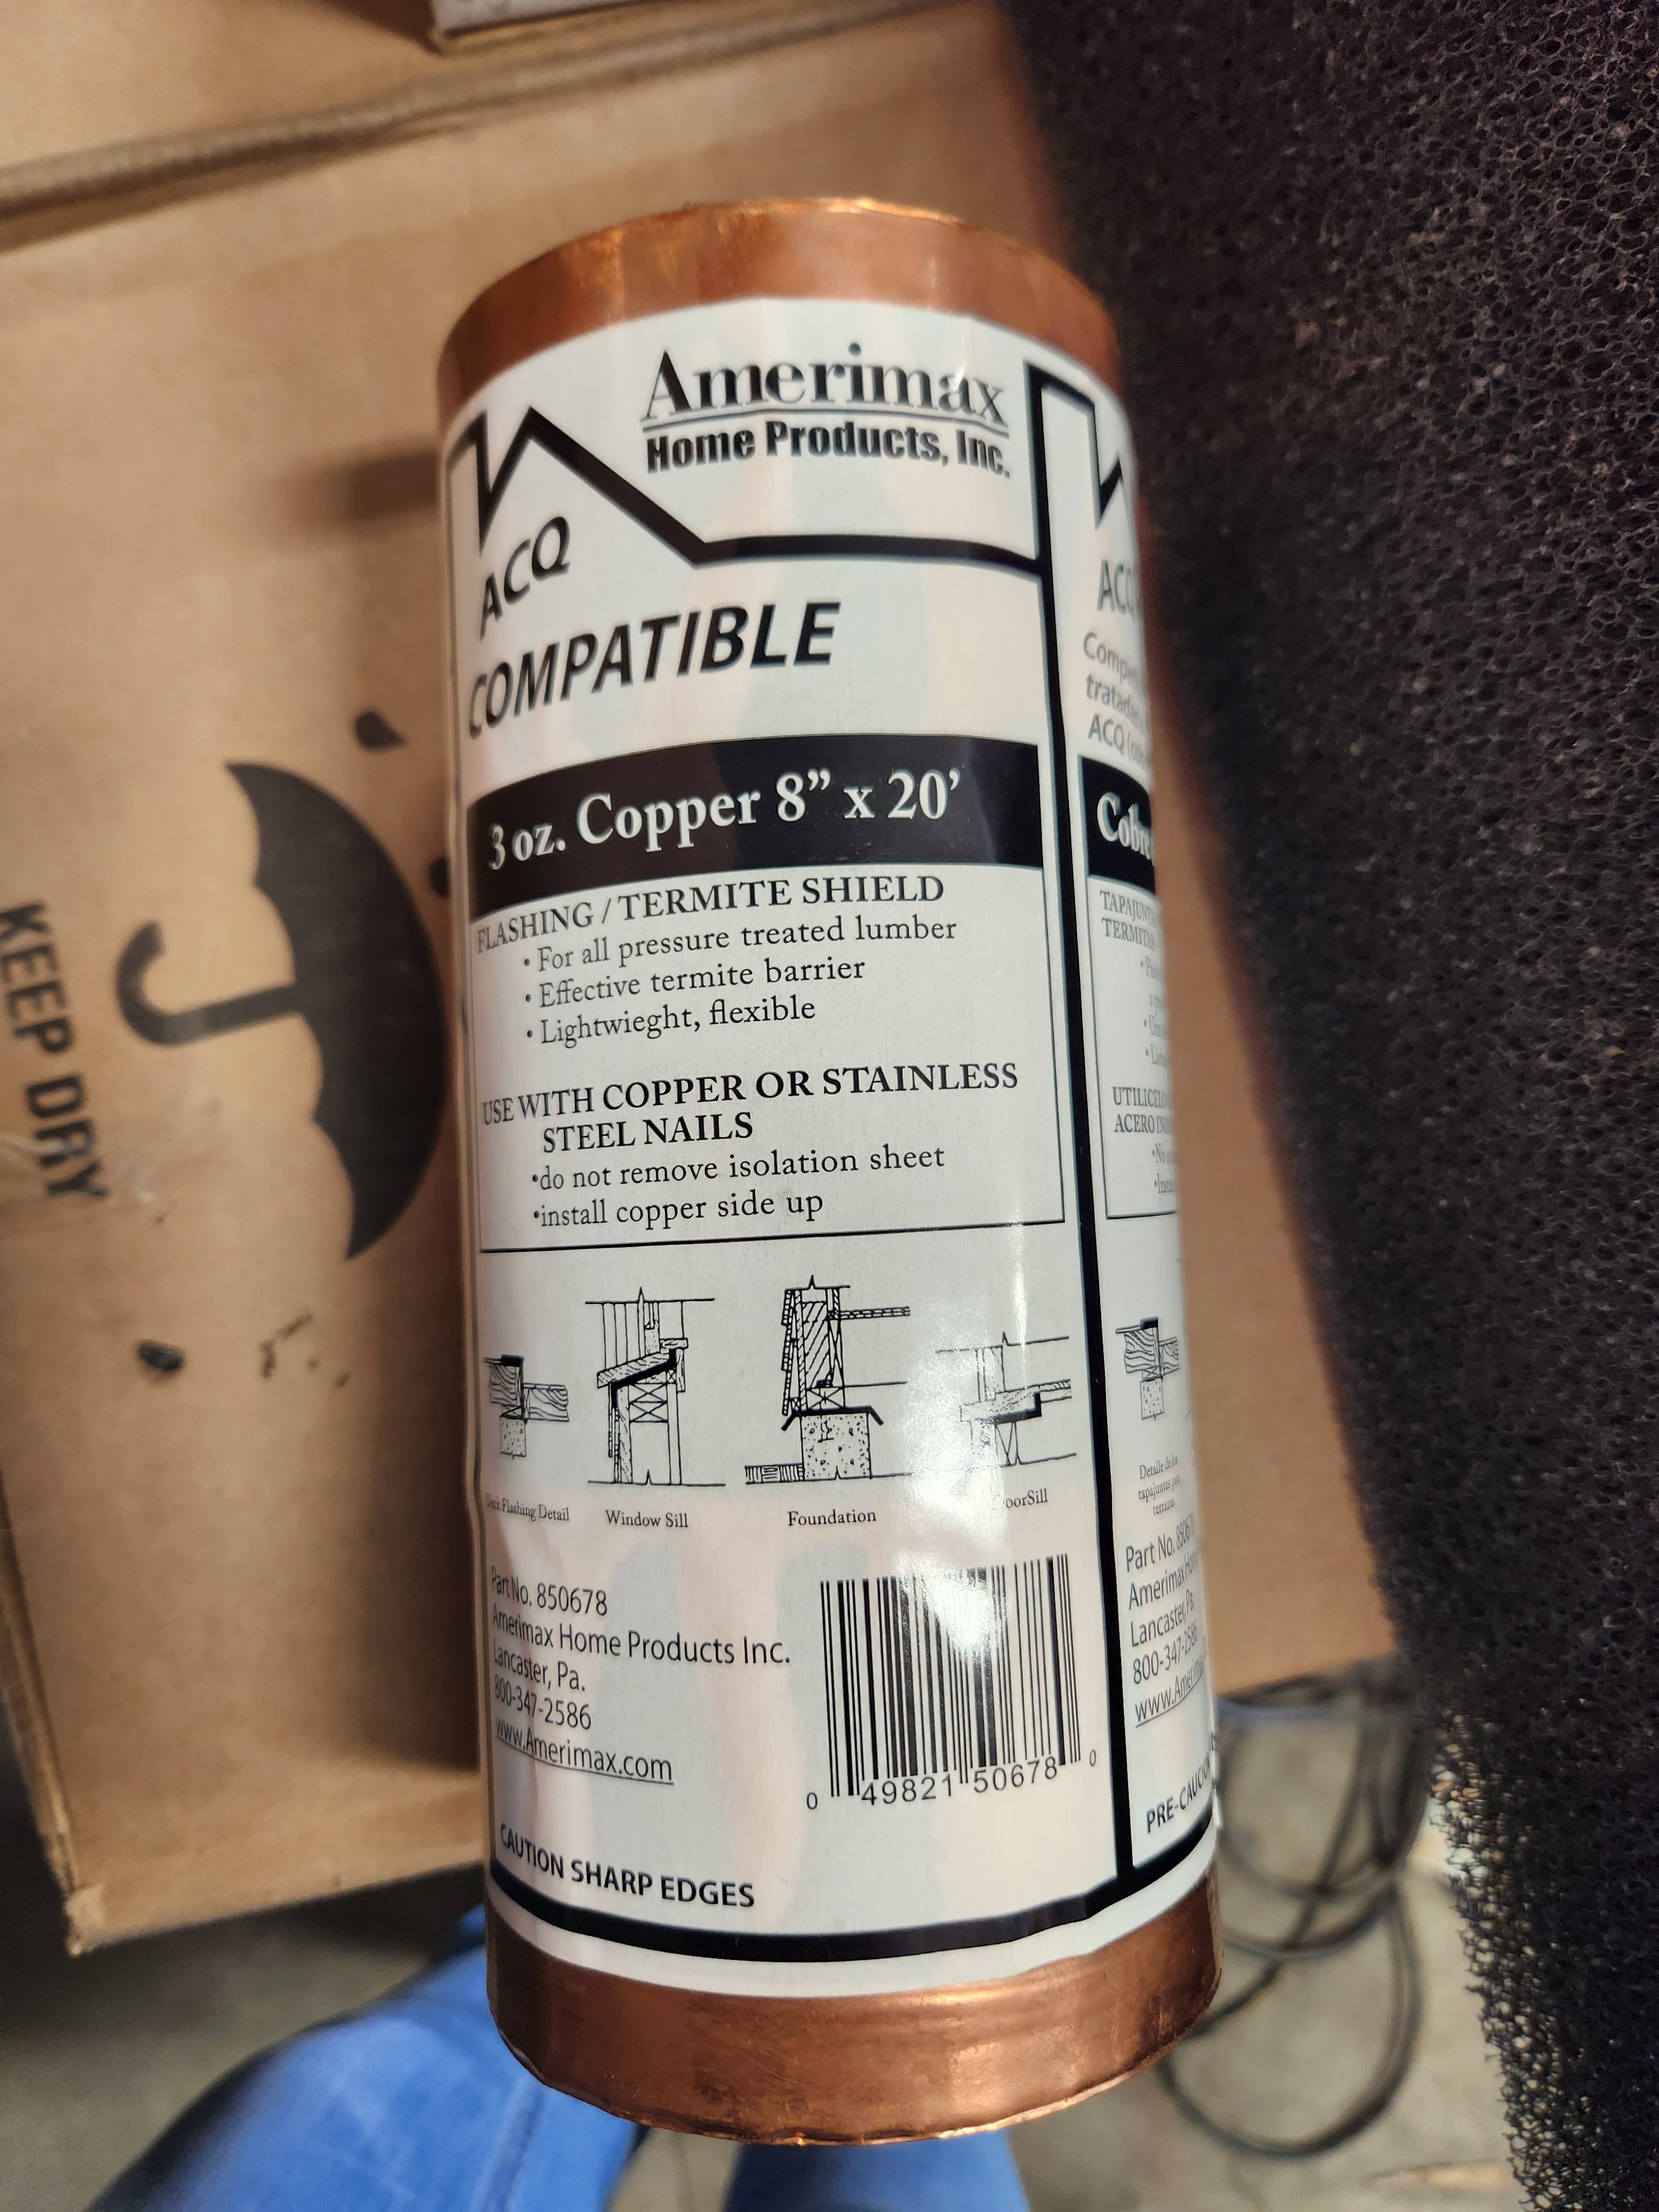 Amerimax ACQ Compatible 3oz Copper (Flashing)